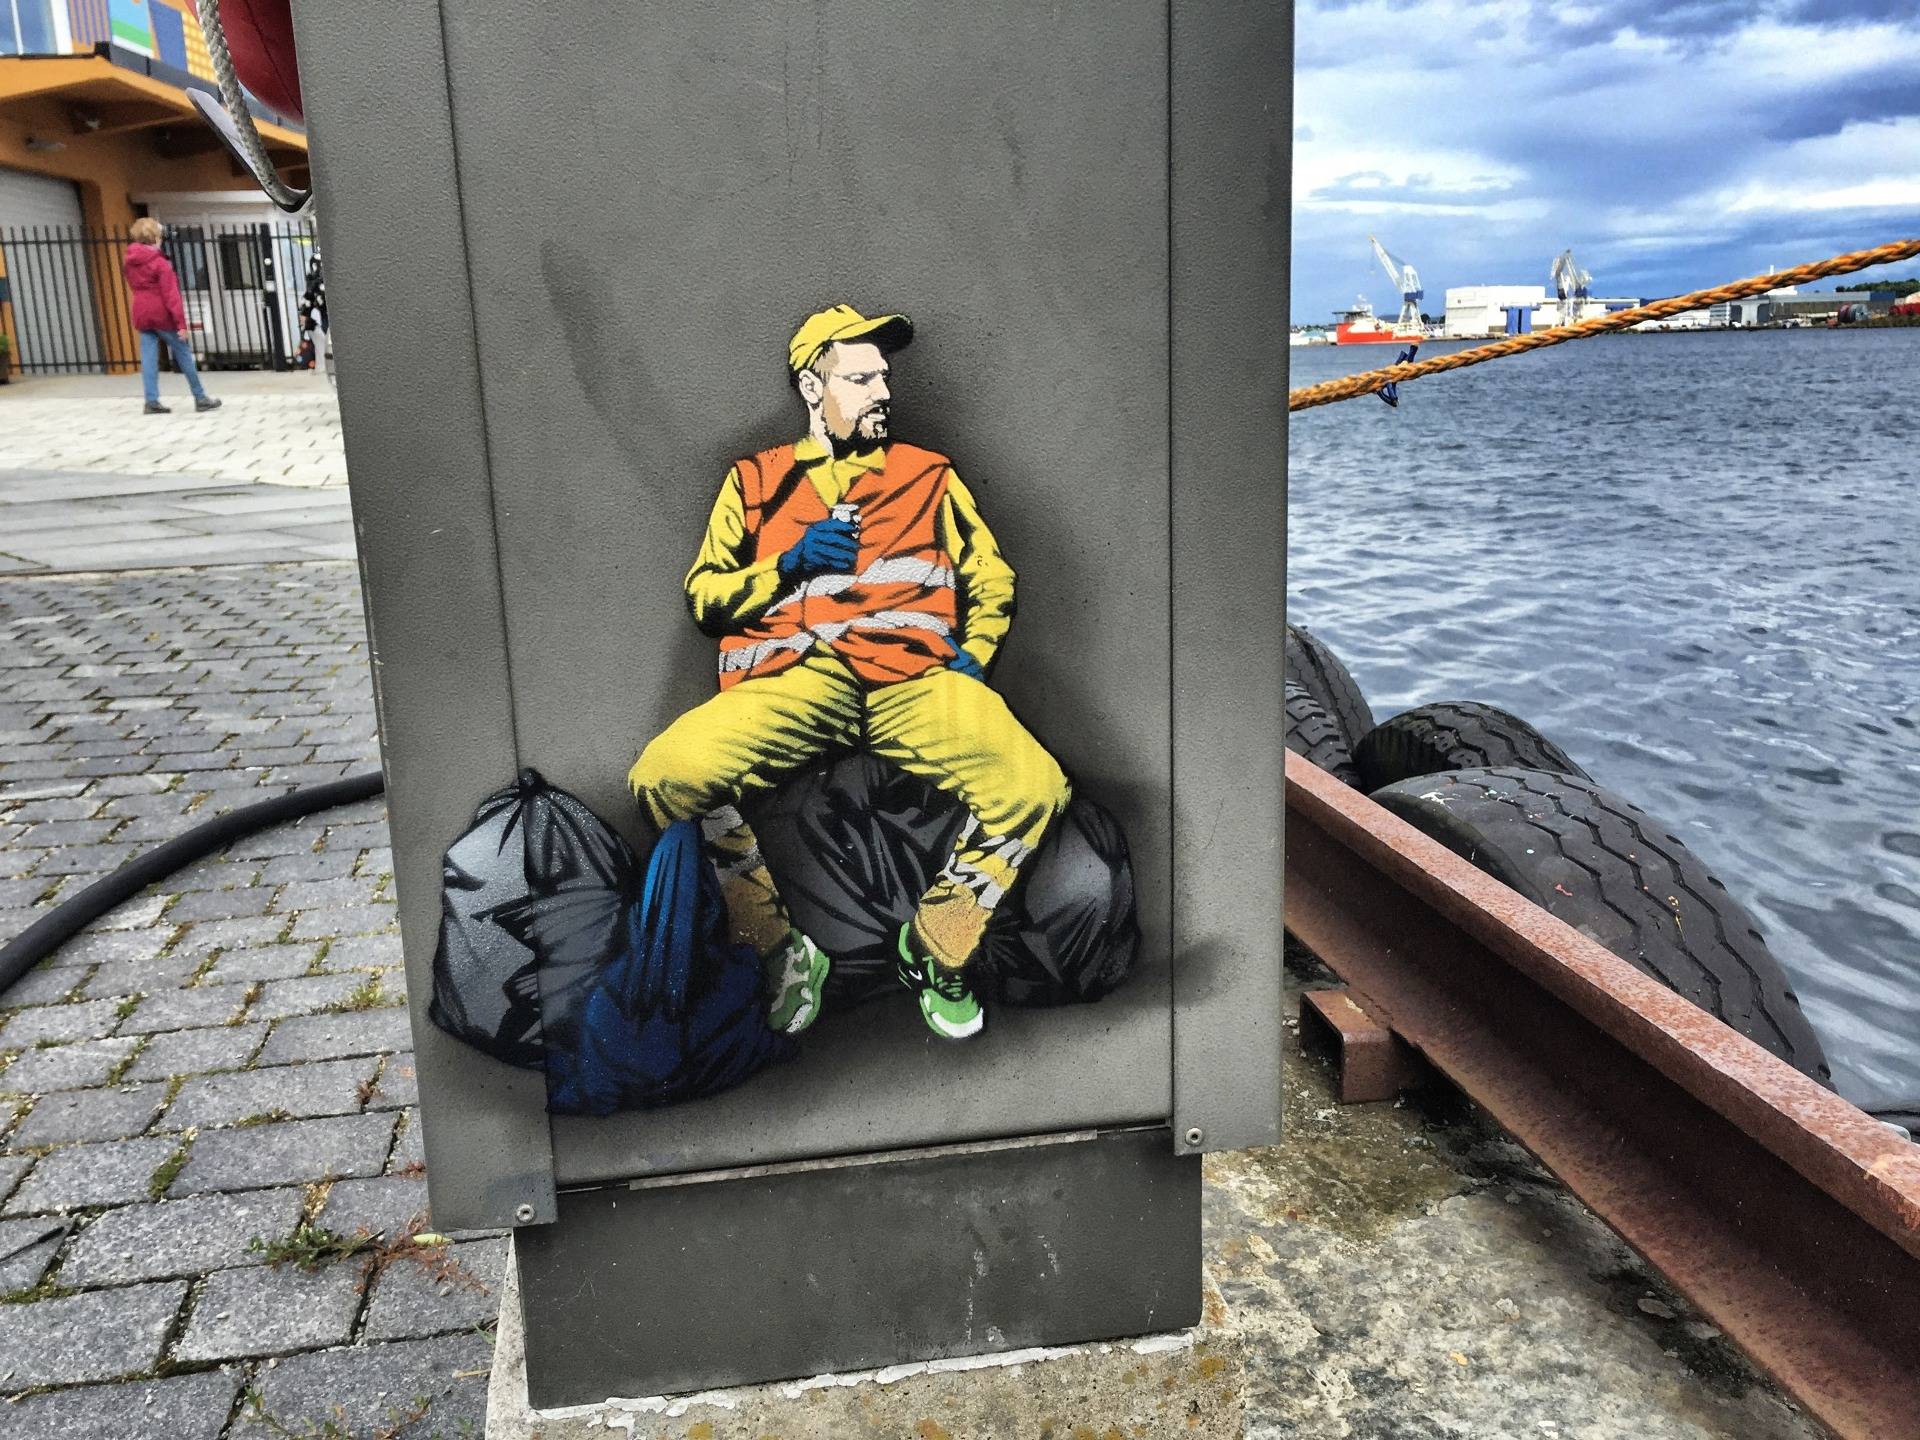 Stavanger: The world capital of urban art